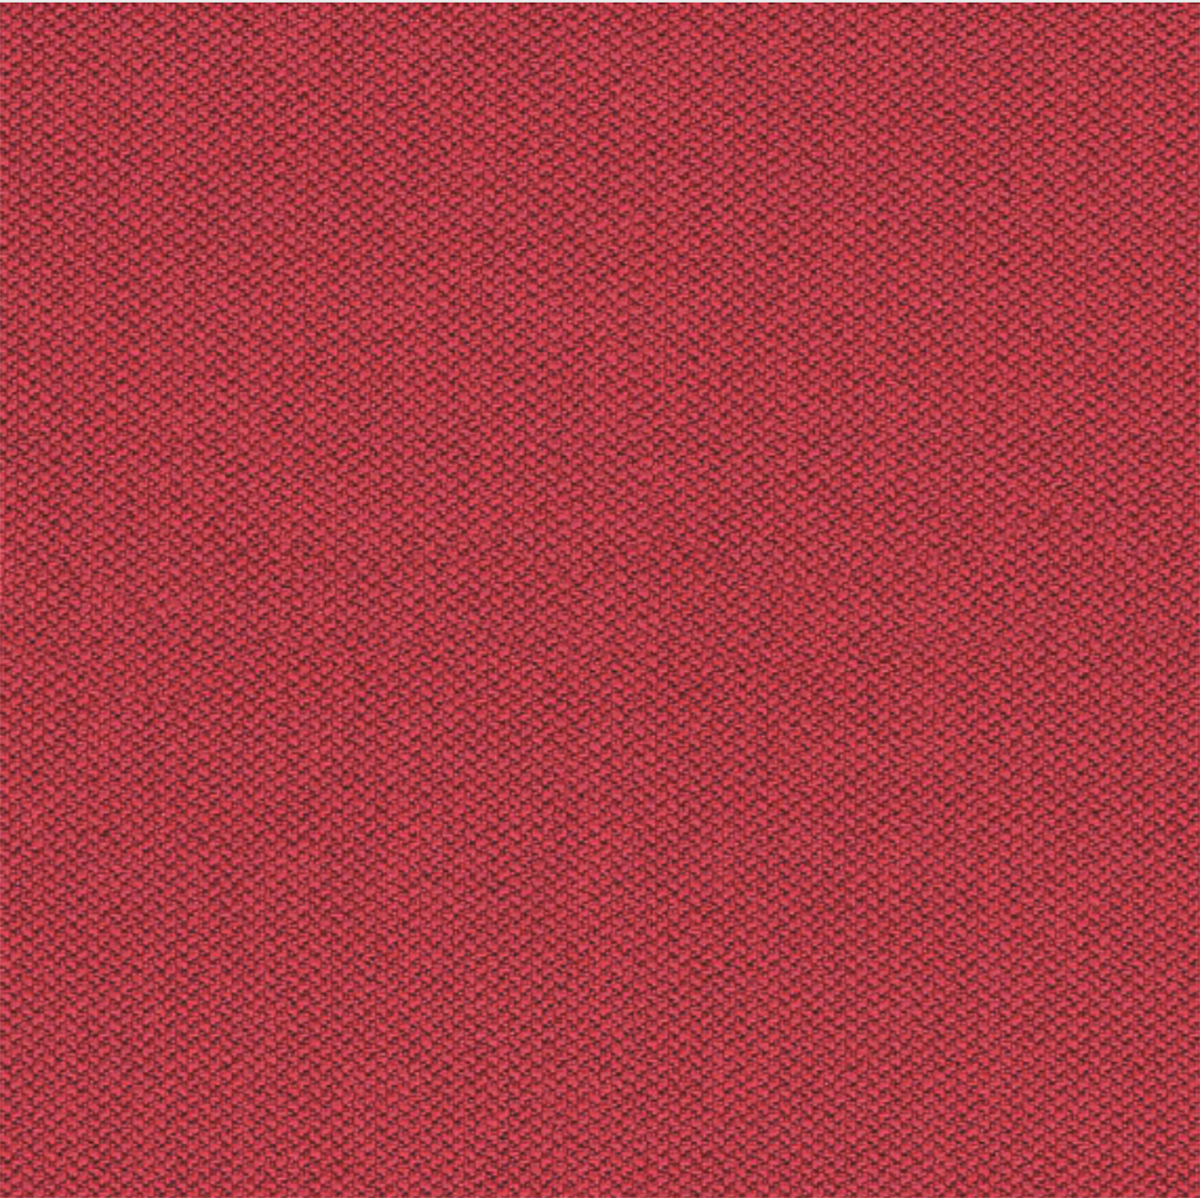 Camira Red Era Fabric [+€77.40]